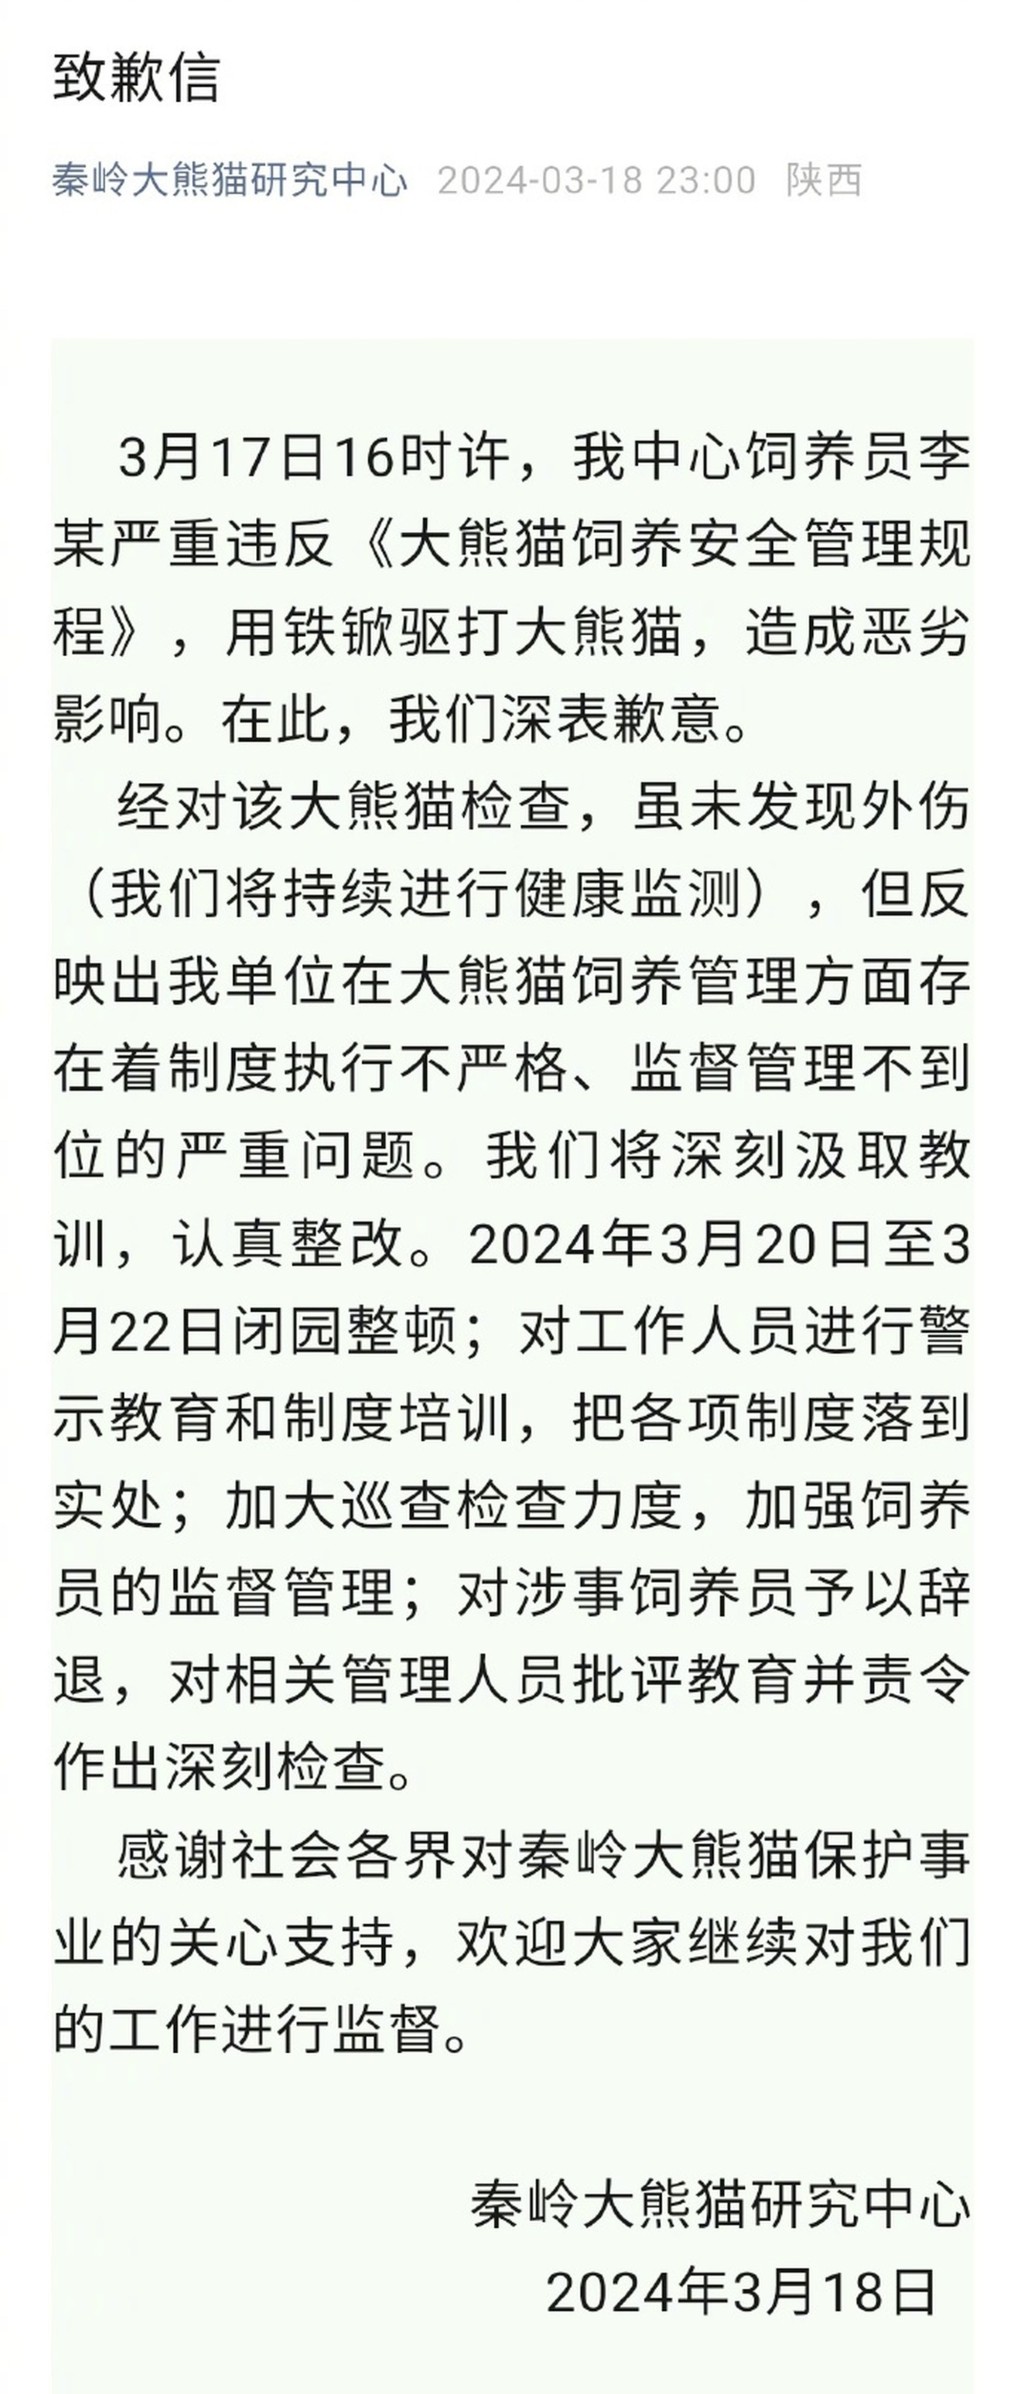 秦嶺大熊貓研究中心發布道歉聲明。